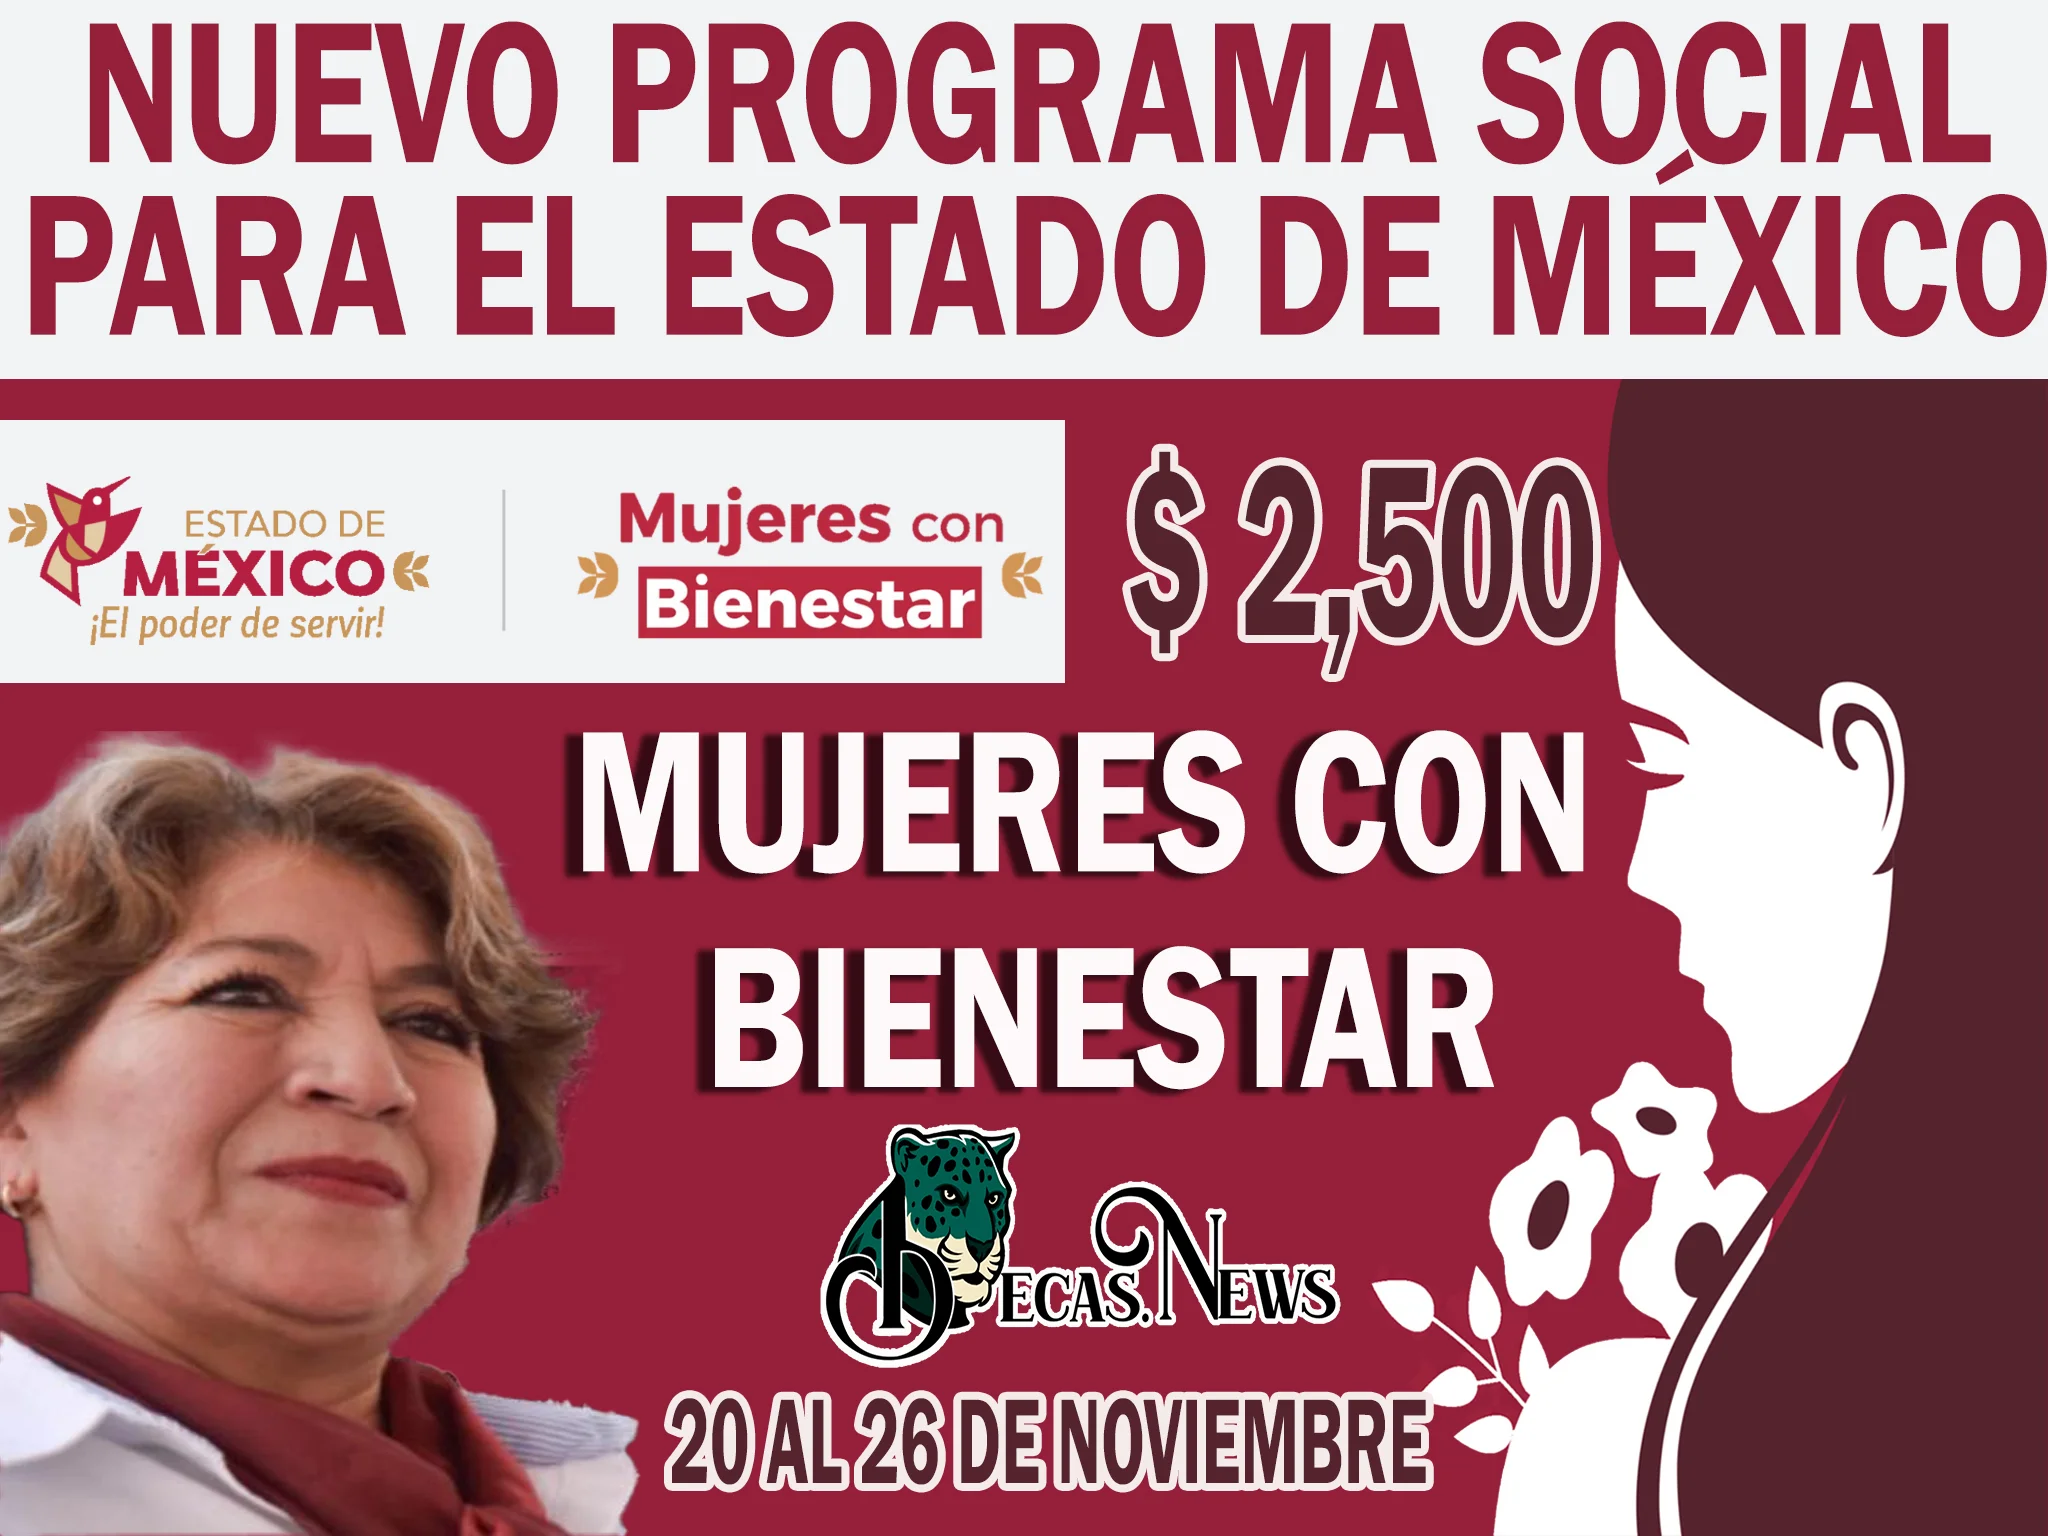 Mujeres con Bienestar: Nuevo programa social para el Estado de México